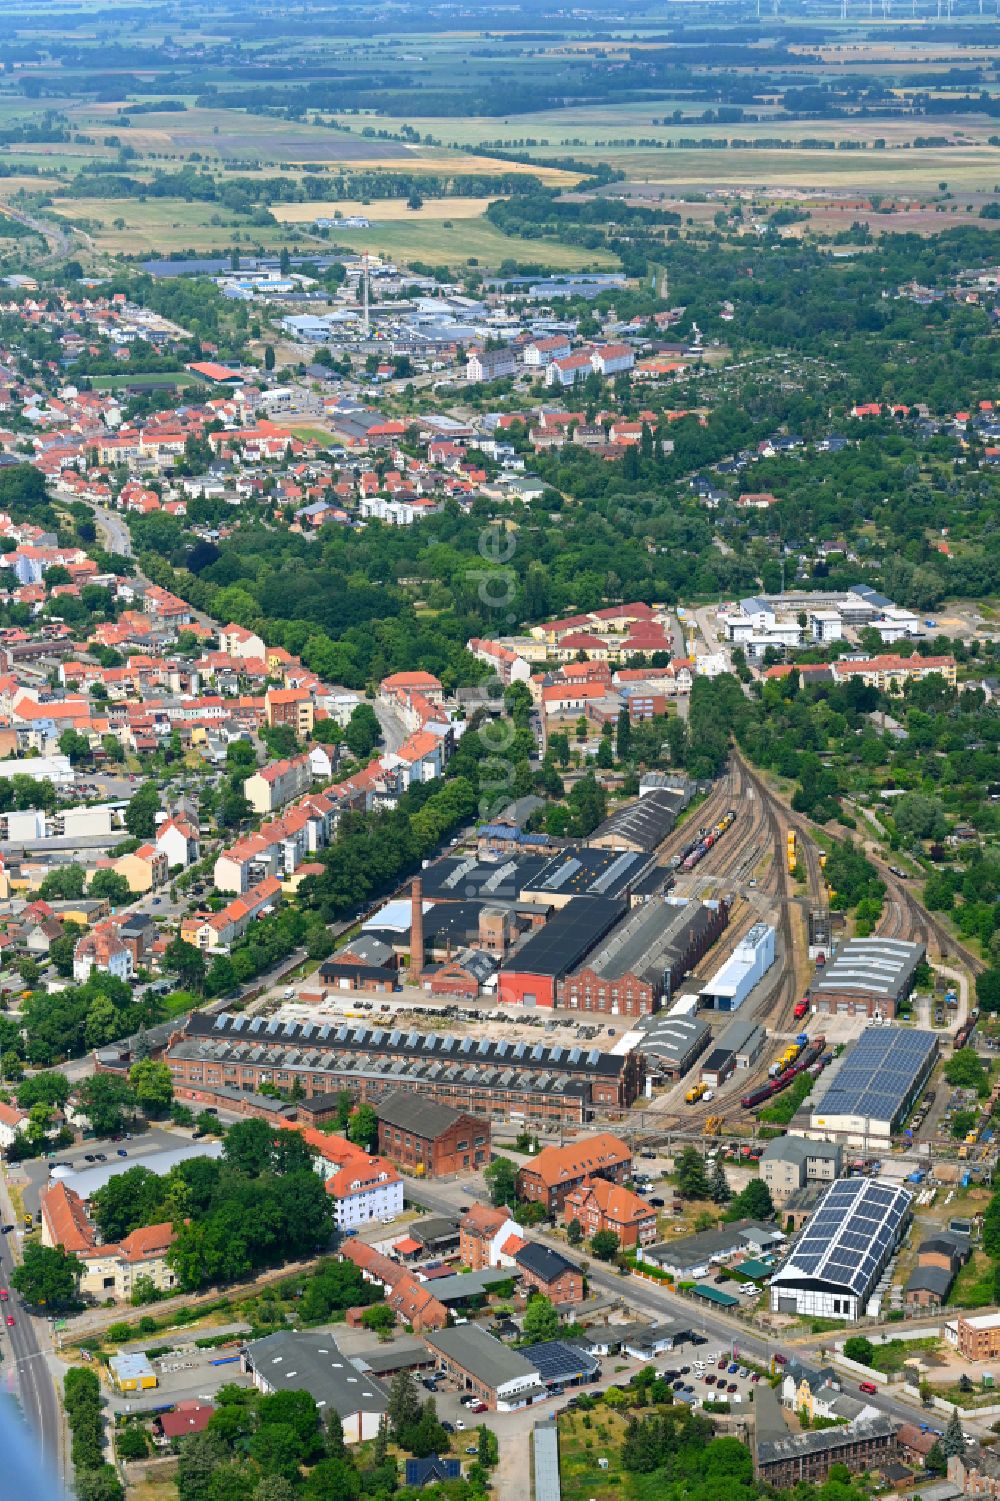 Luftbild Hansestadt Stendal - Bahnbetriebswerk und Ausbesserungswerk für Lokomotiven in Hansestadt Stendal im Bundesland Sachsen-Anhalt, Deutschland